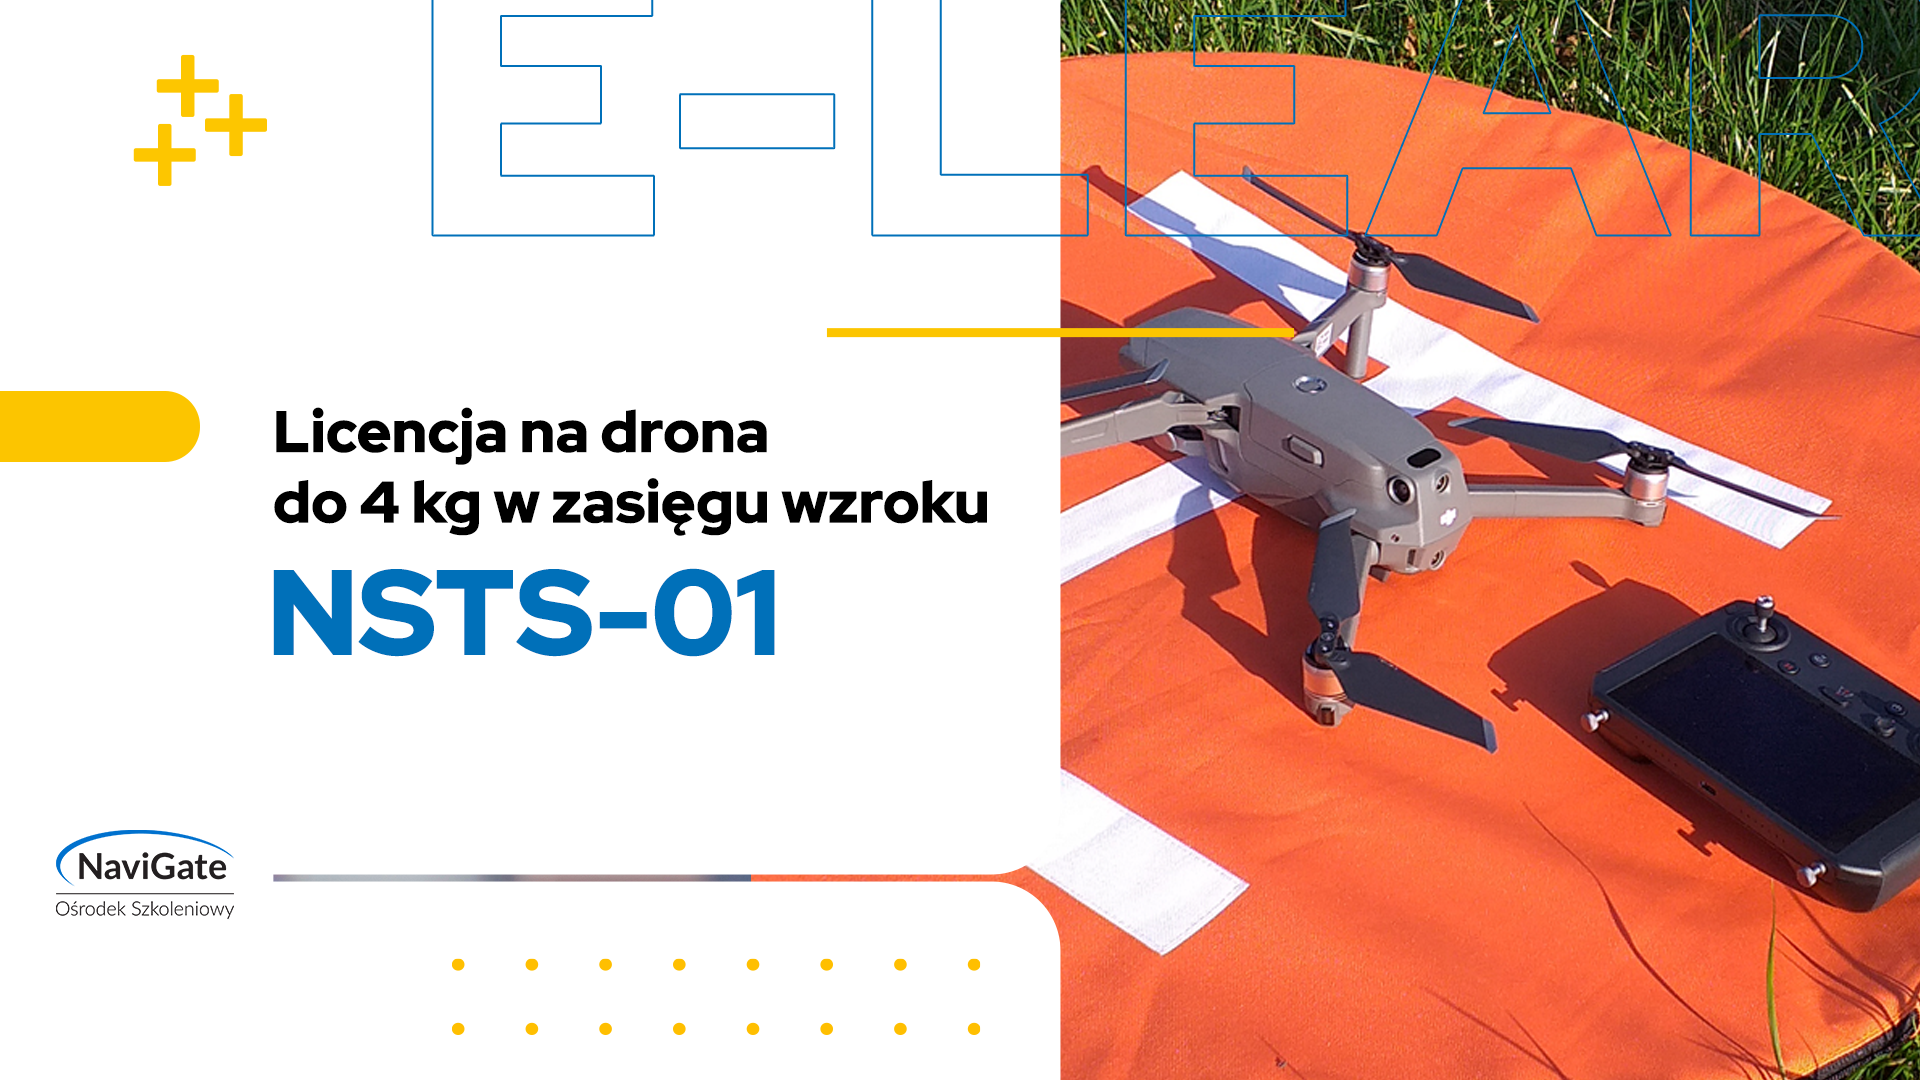 NSTS-01 – licencja na drona do 4kg w zasięgu wzroku (VLOS)